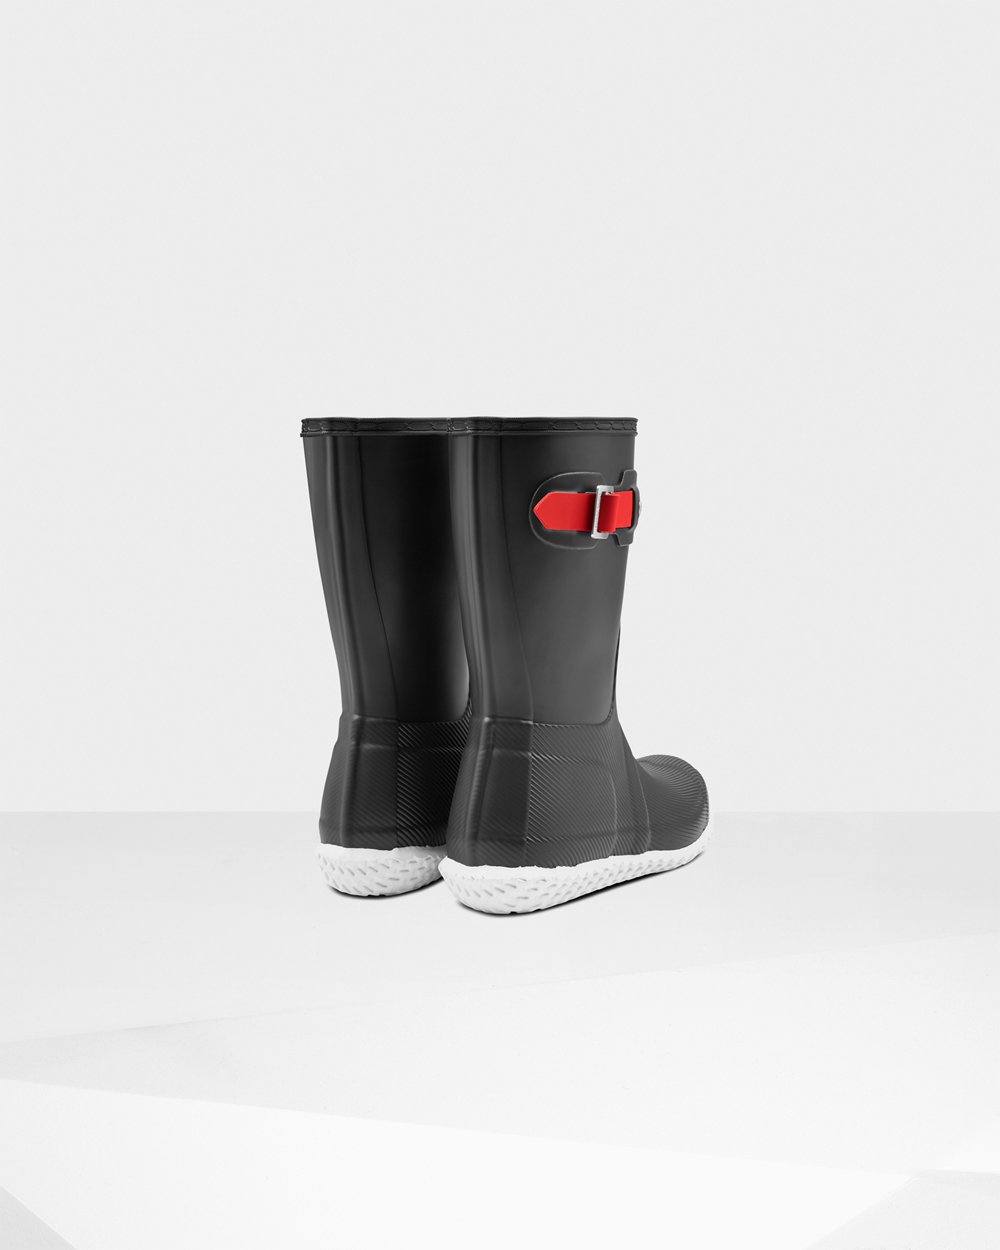 Womens Short Rain Boots - Hunter Original Flat Heel Calendar Sole (52TVQSYLC) - Black/Red